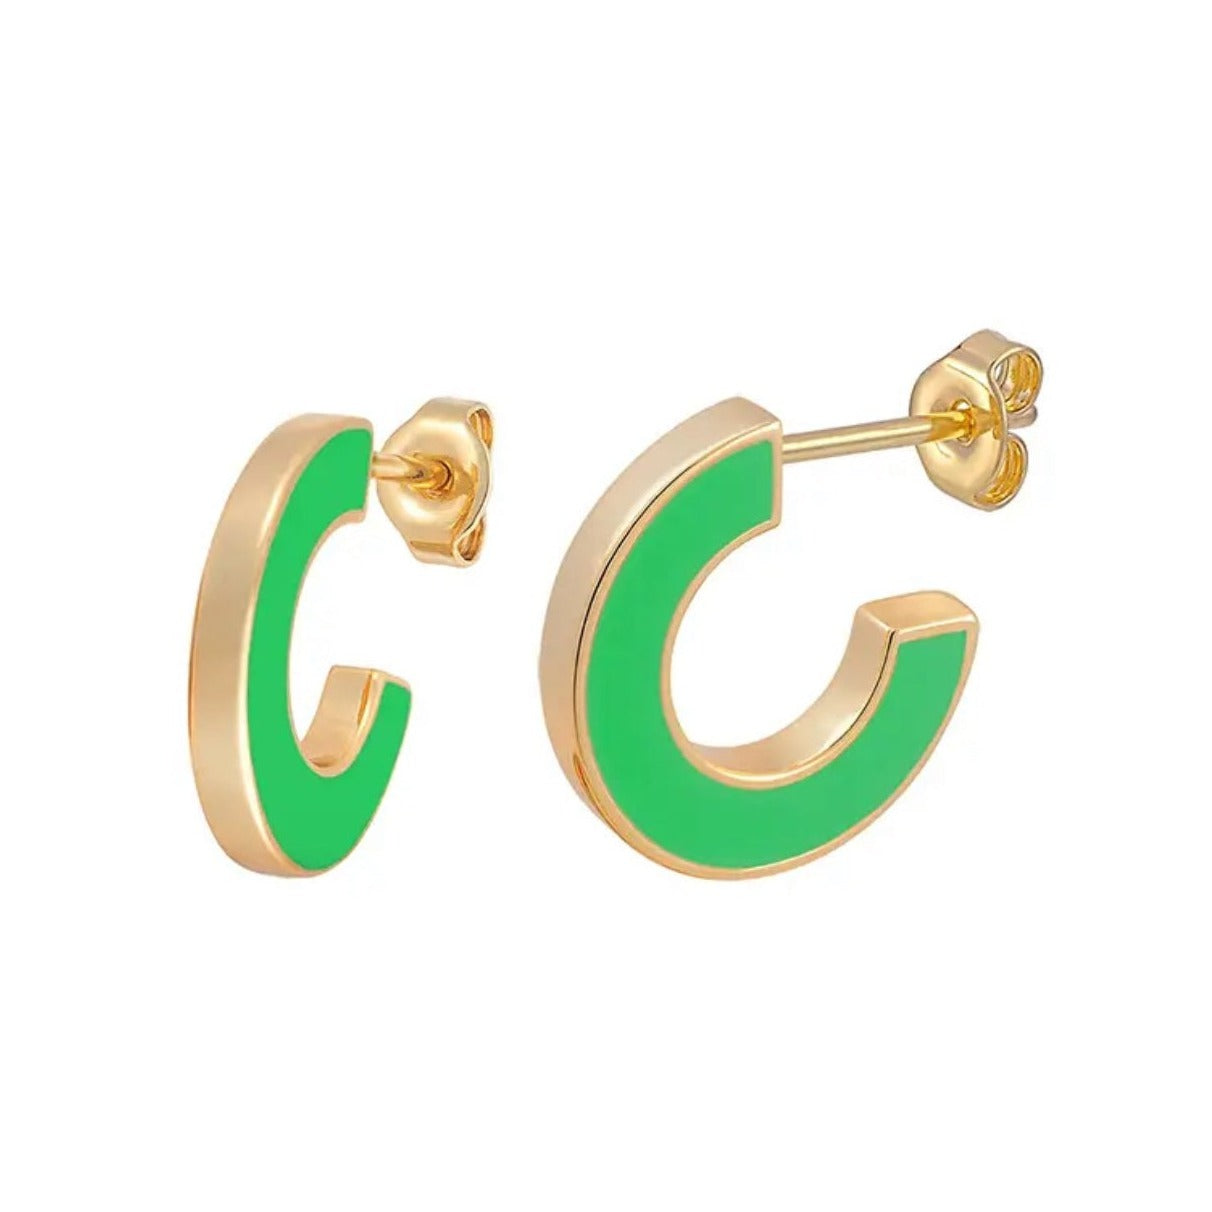 Green and gold hoop earrings